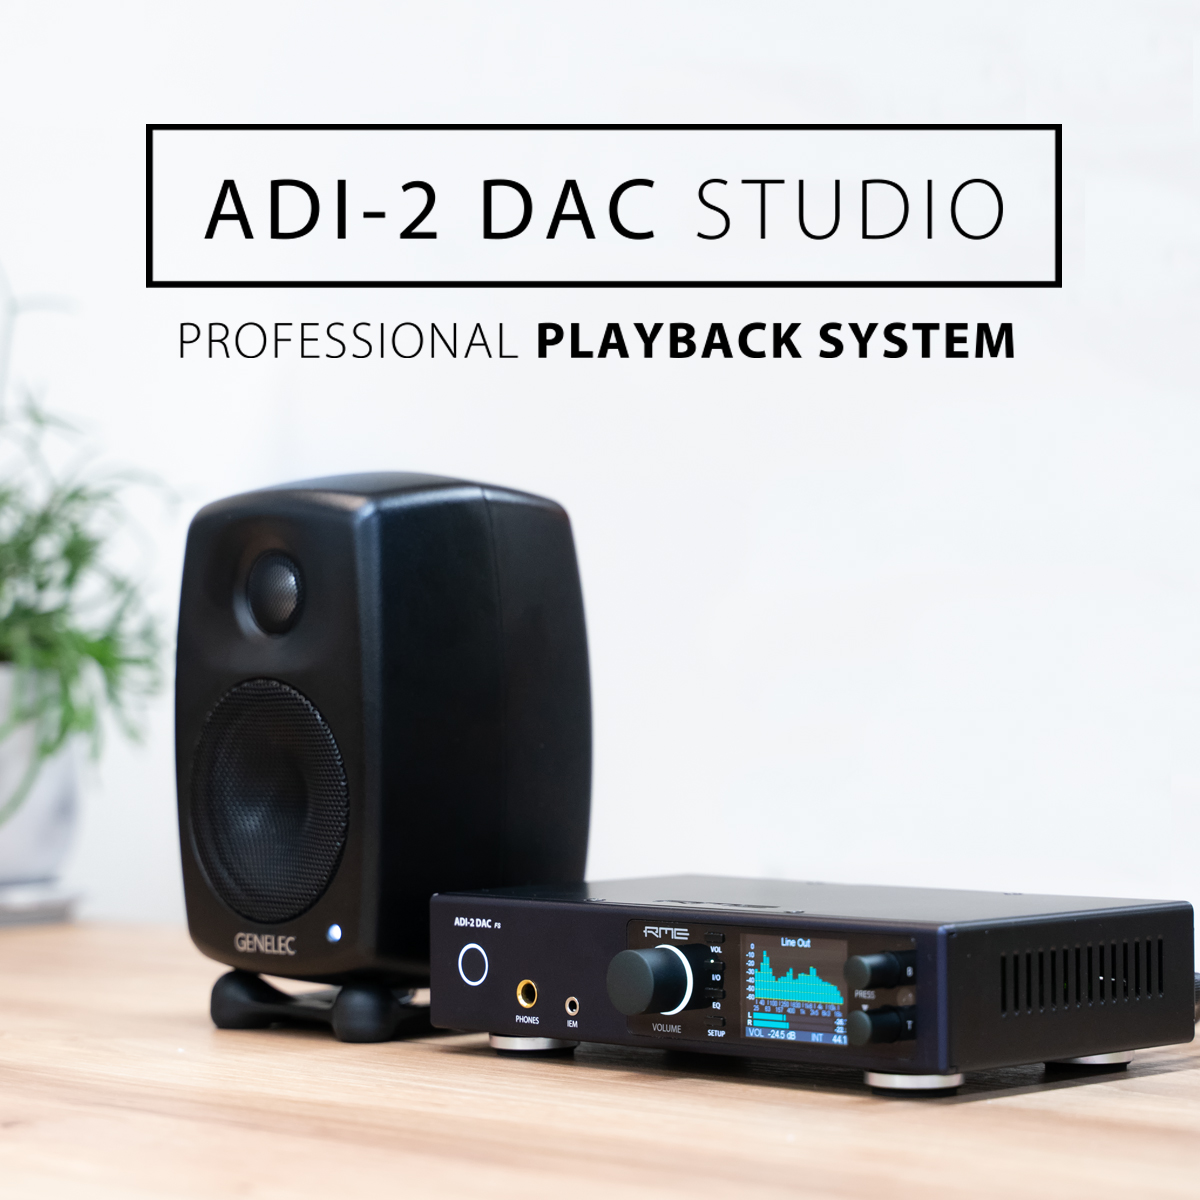 ADI-2 DAC STUDIO